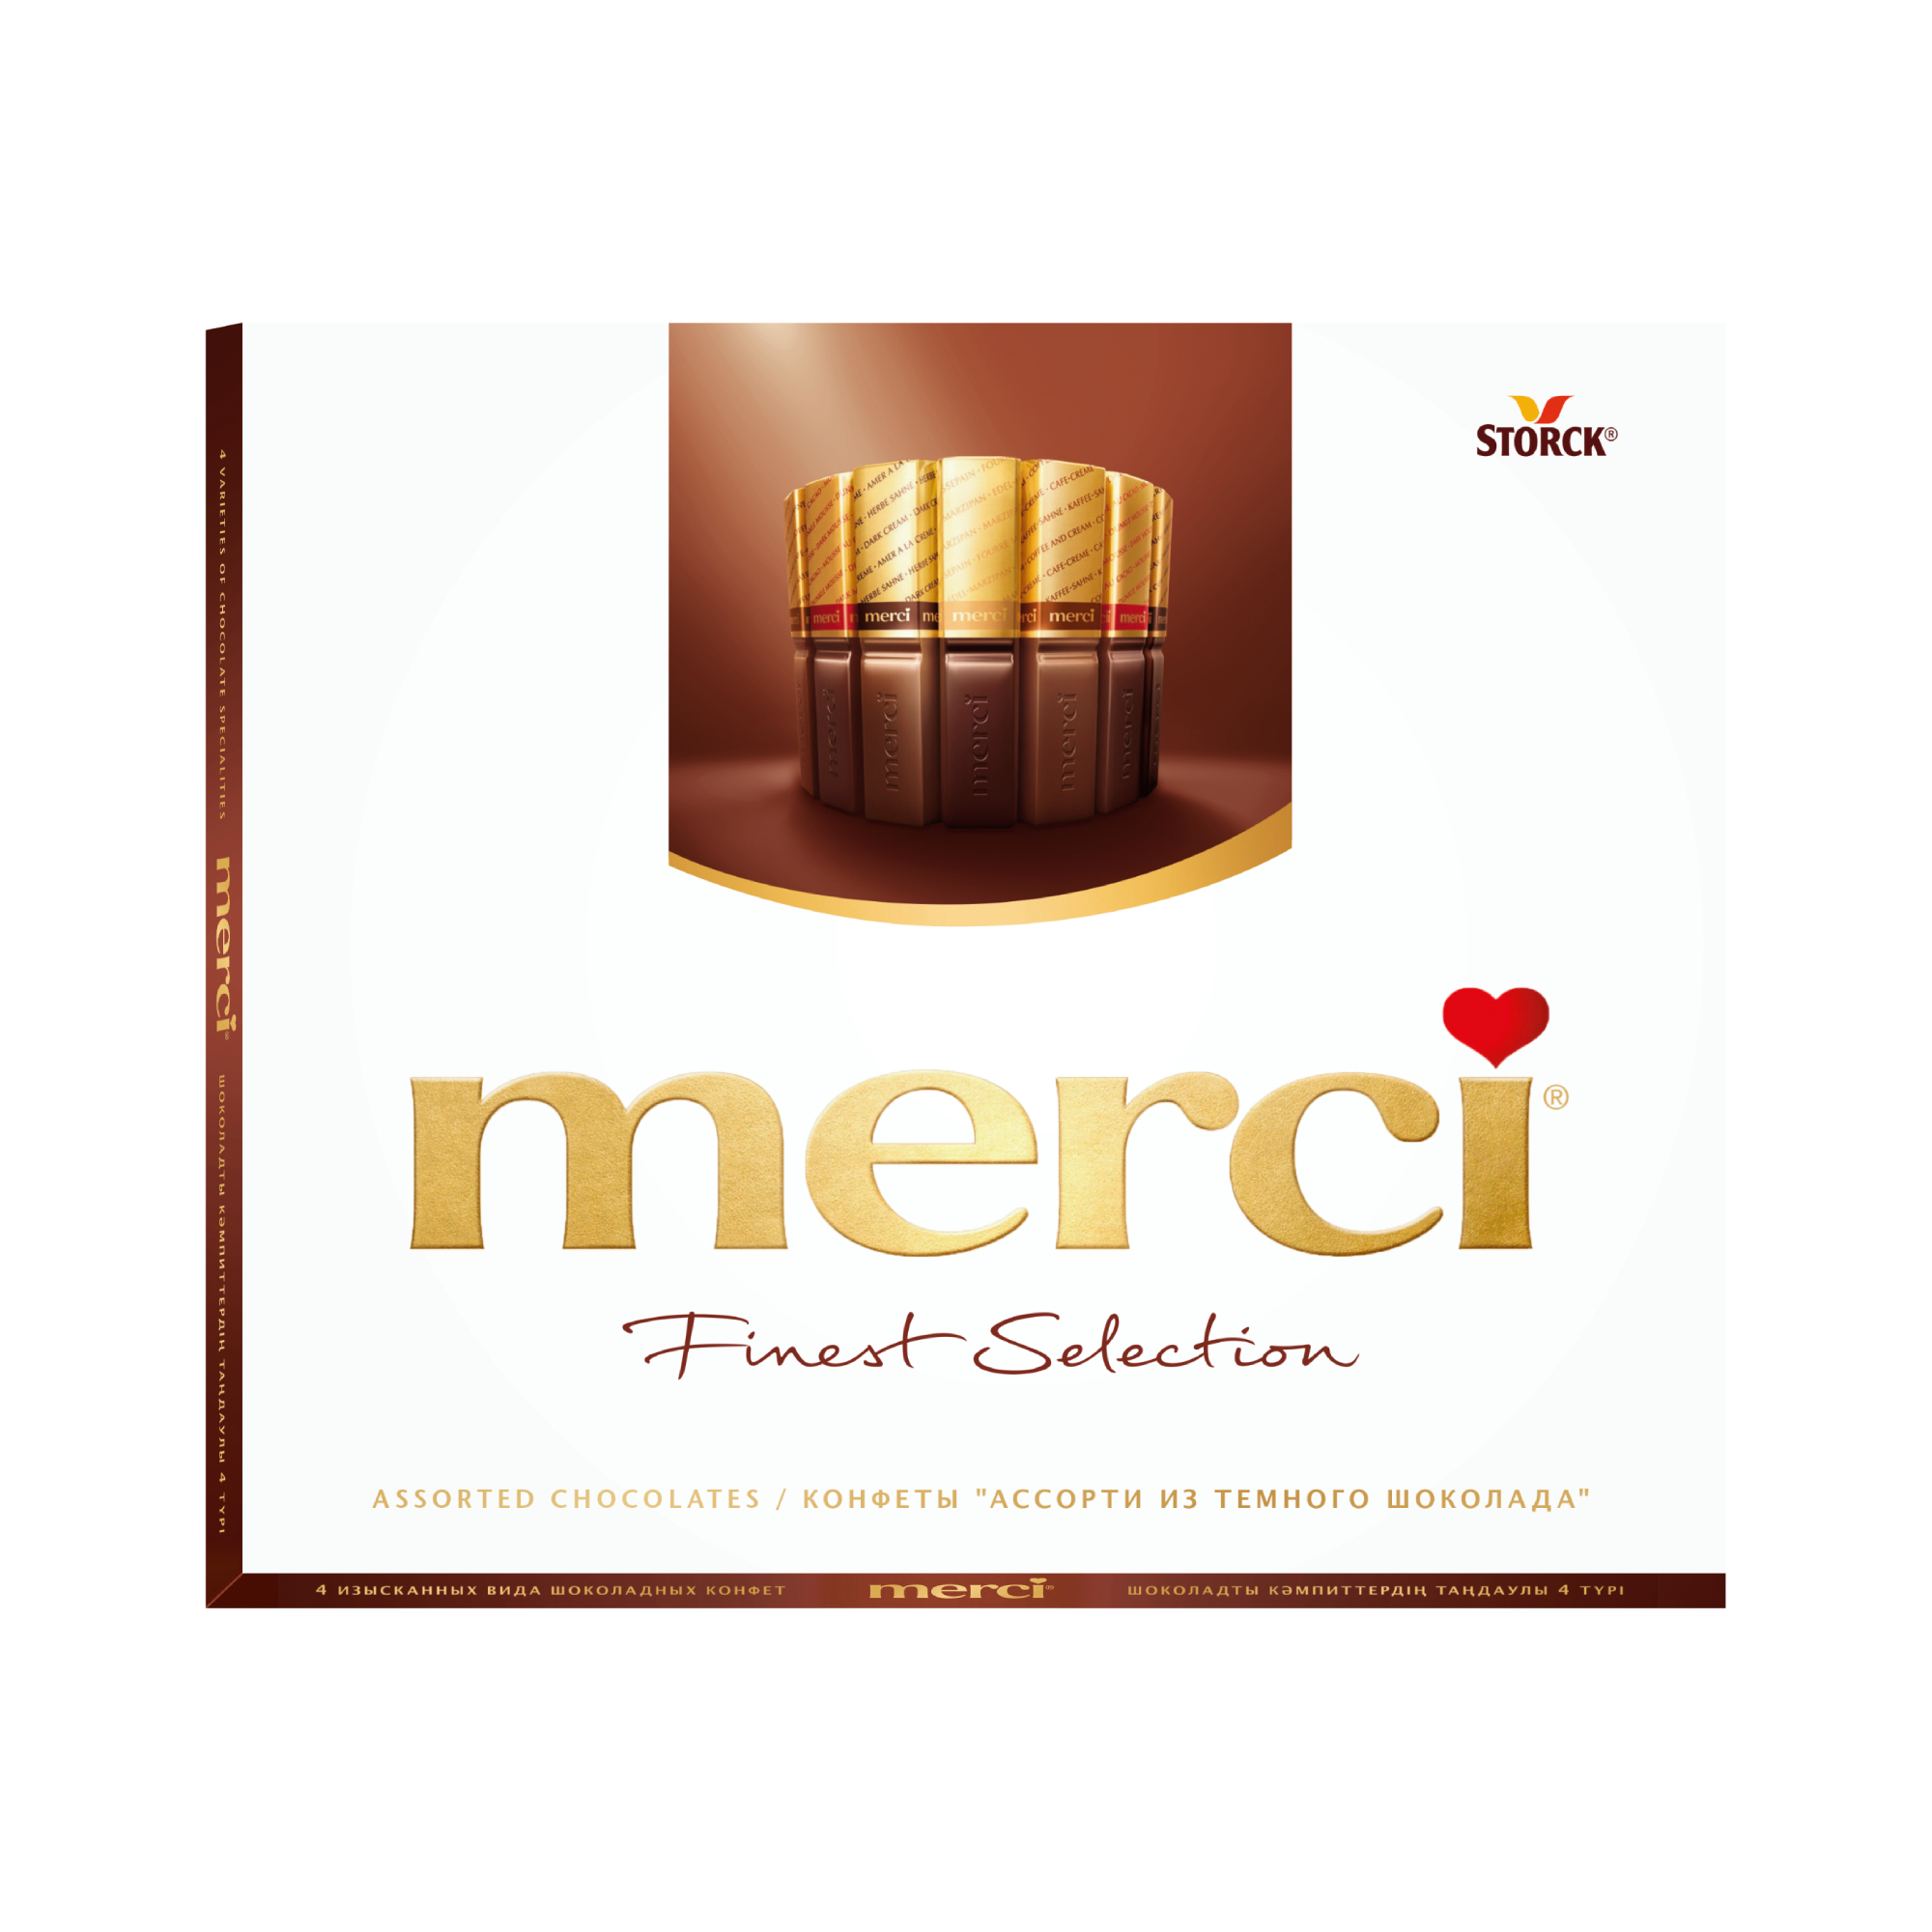 Шоколадный набор Storck Merci Ассорти 4 вида с начинкой из шоколадного мусса 210 г шоколад merci молочный кофе и сливки 100 г